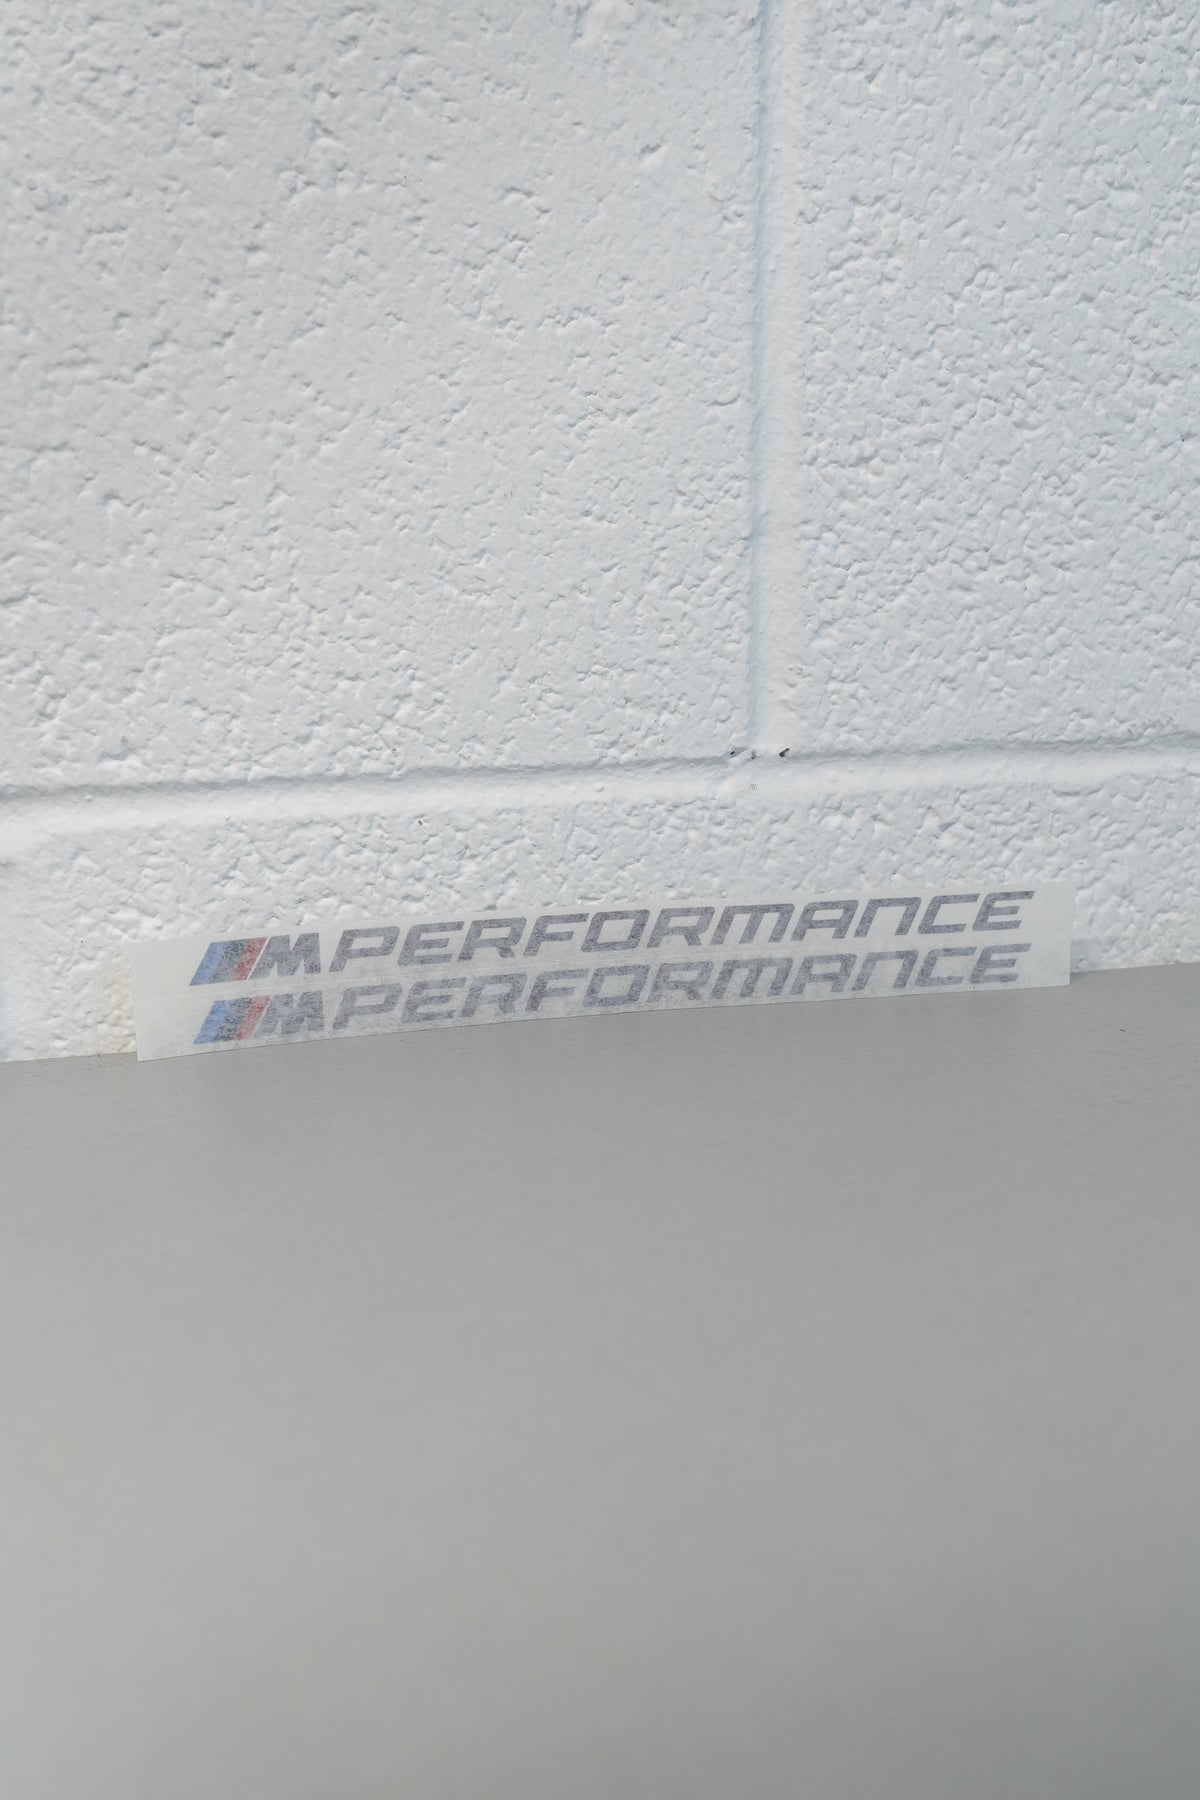 Genuine BMW M Performance Stickers